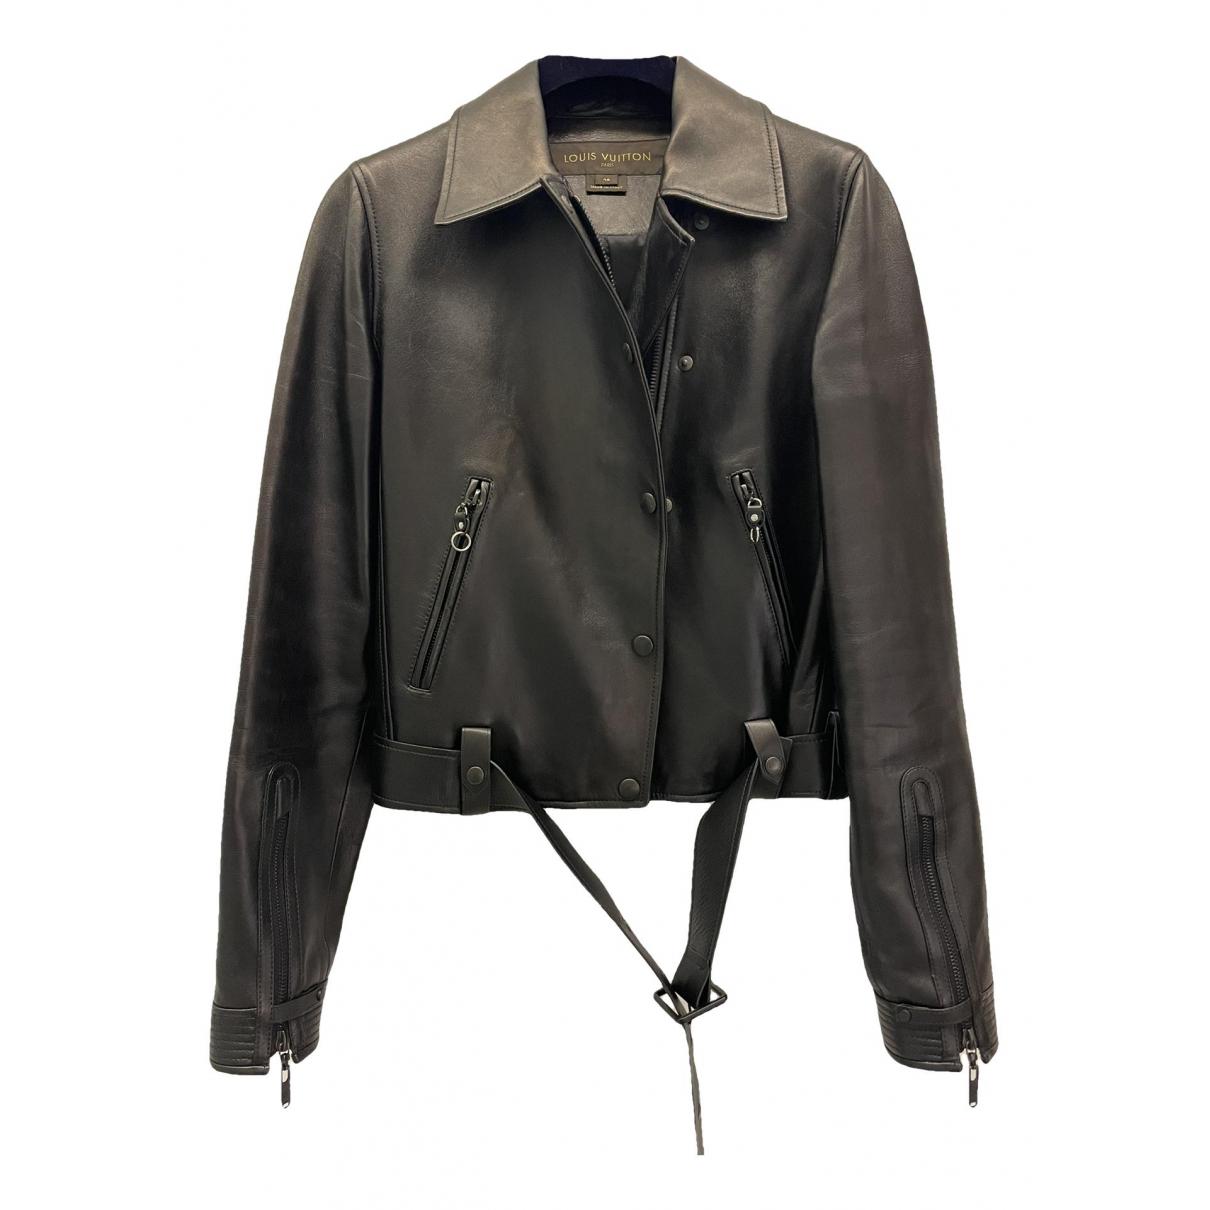 Authentic Louis Vuitton Leather Vest Jacket, Size Small